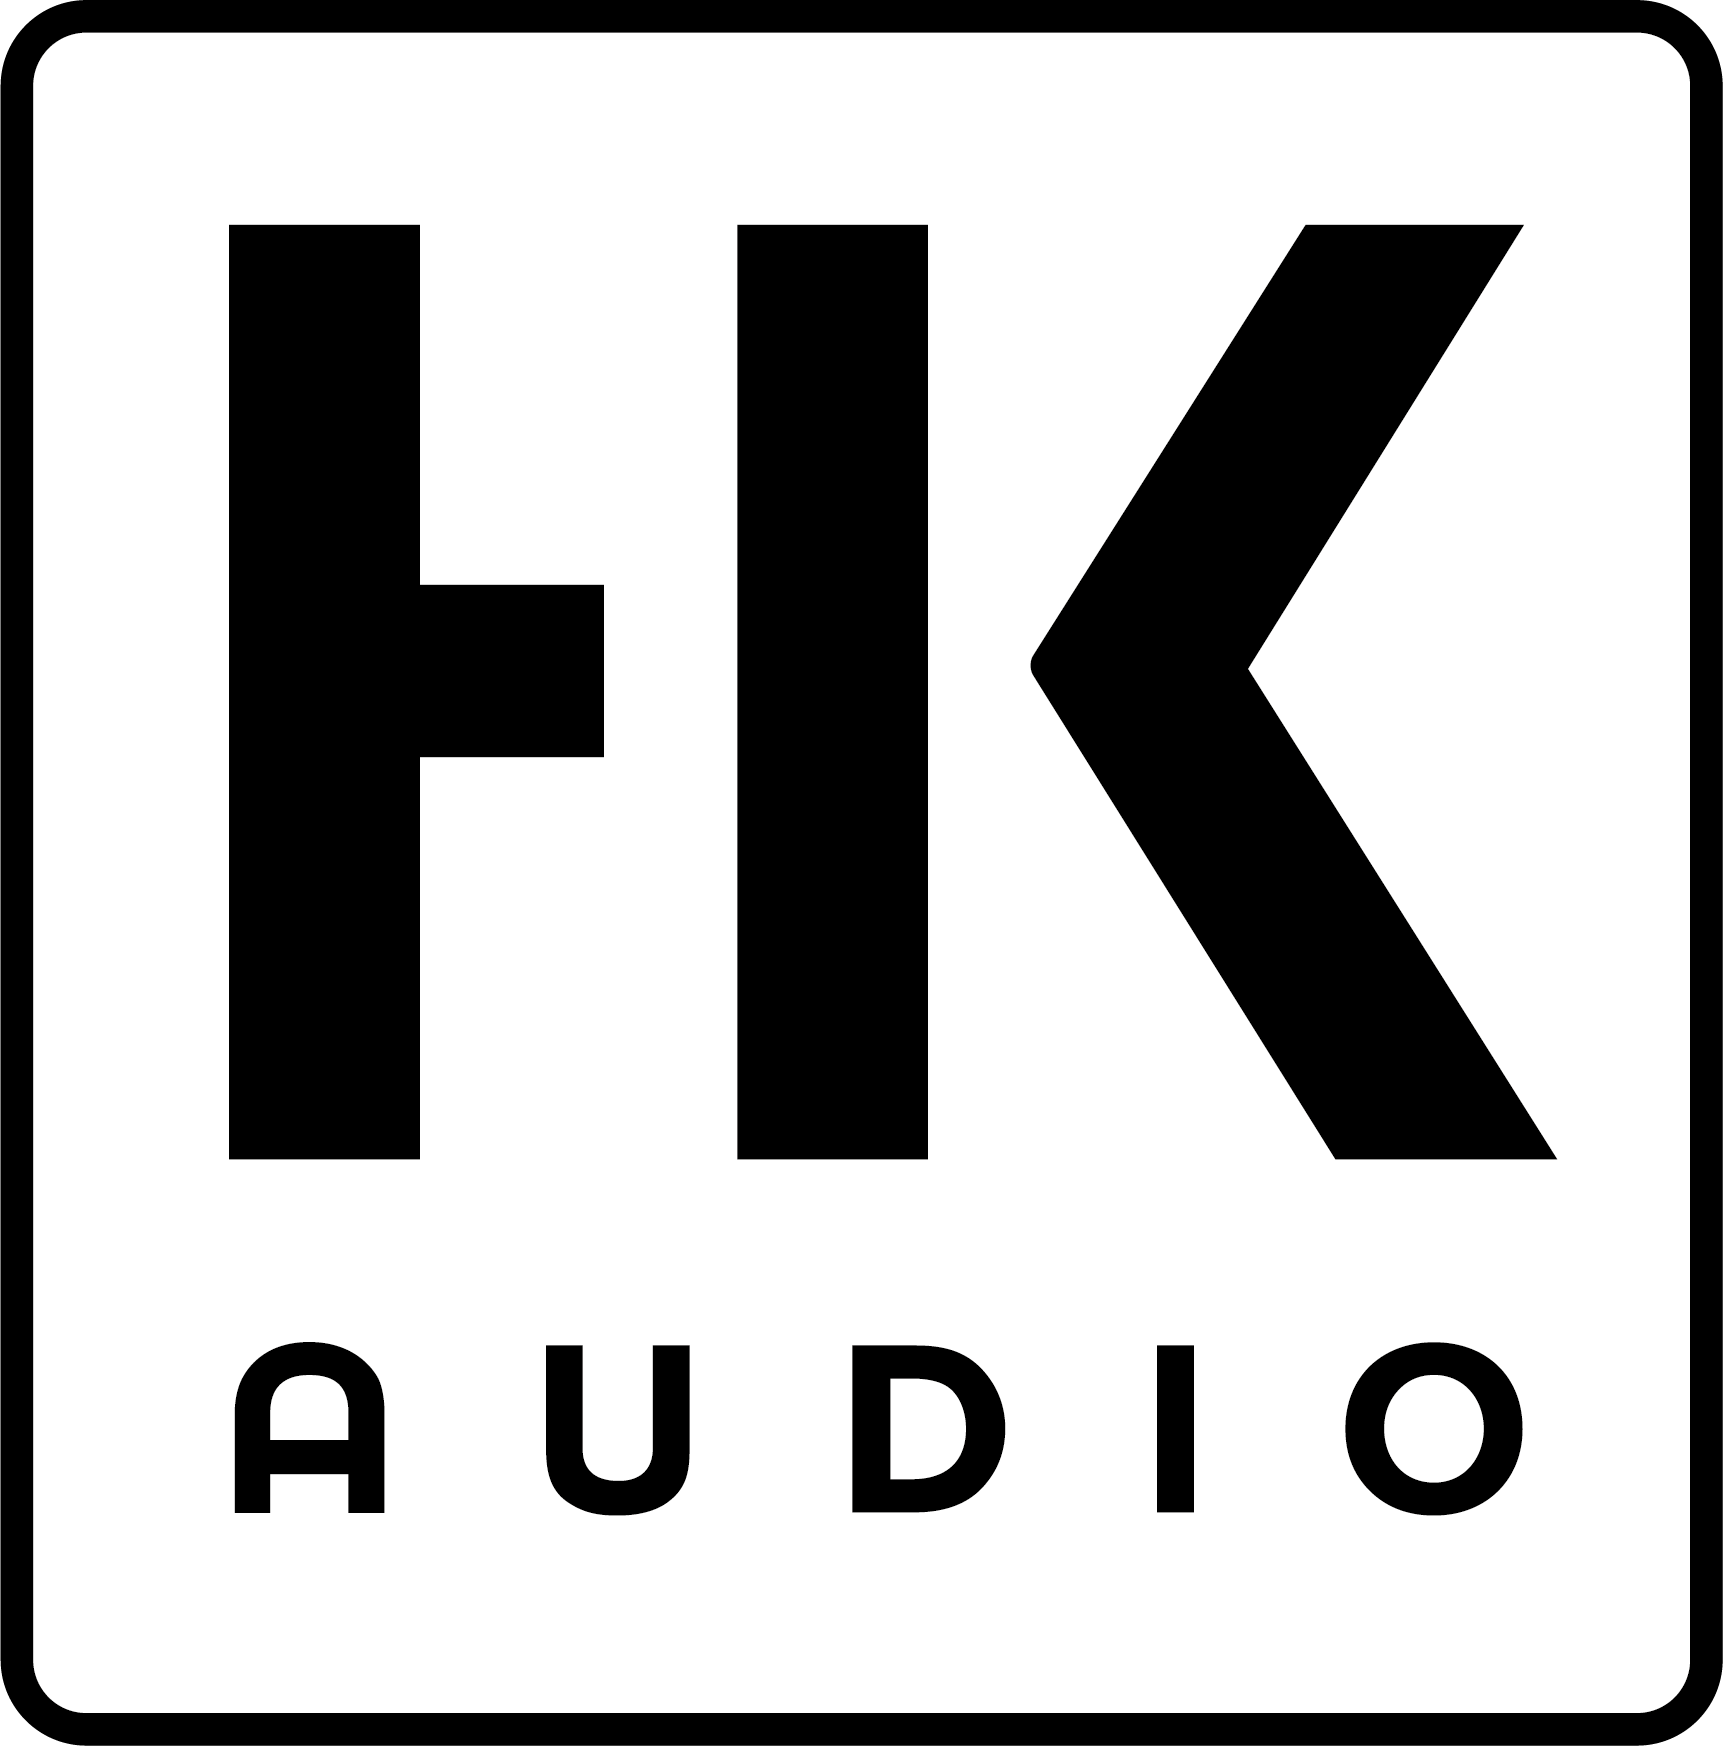 HK-Audio